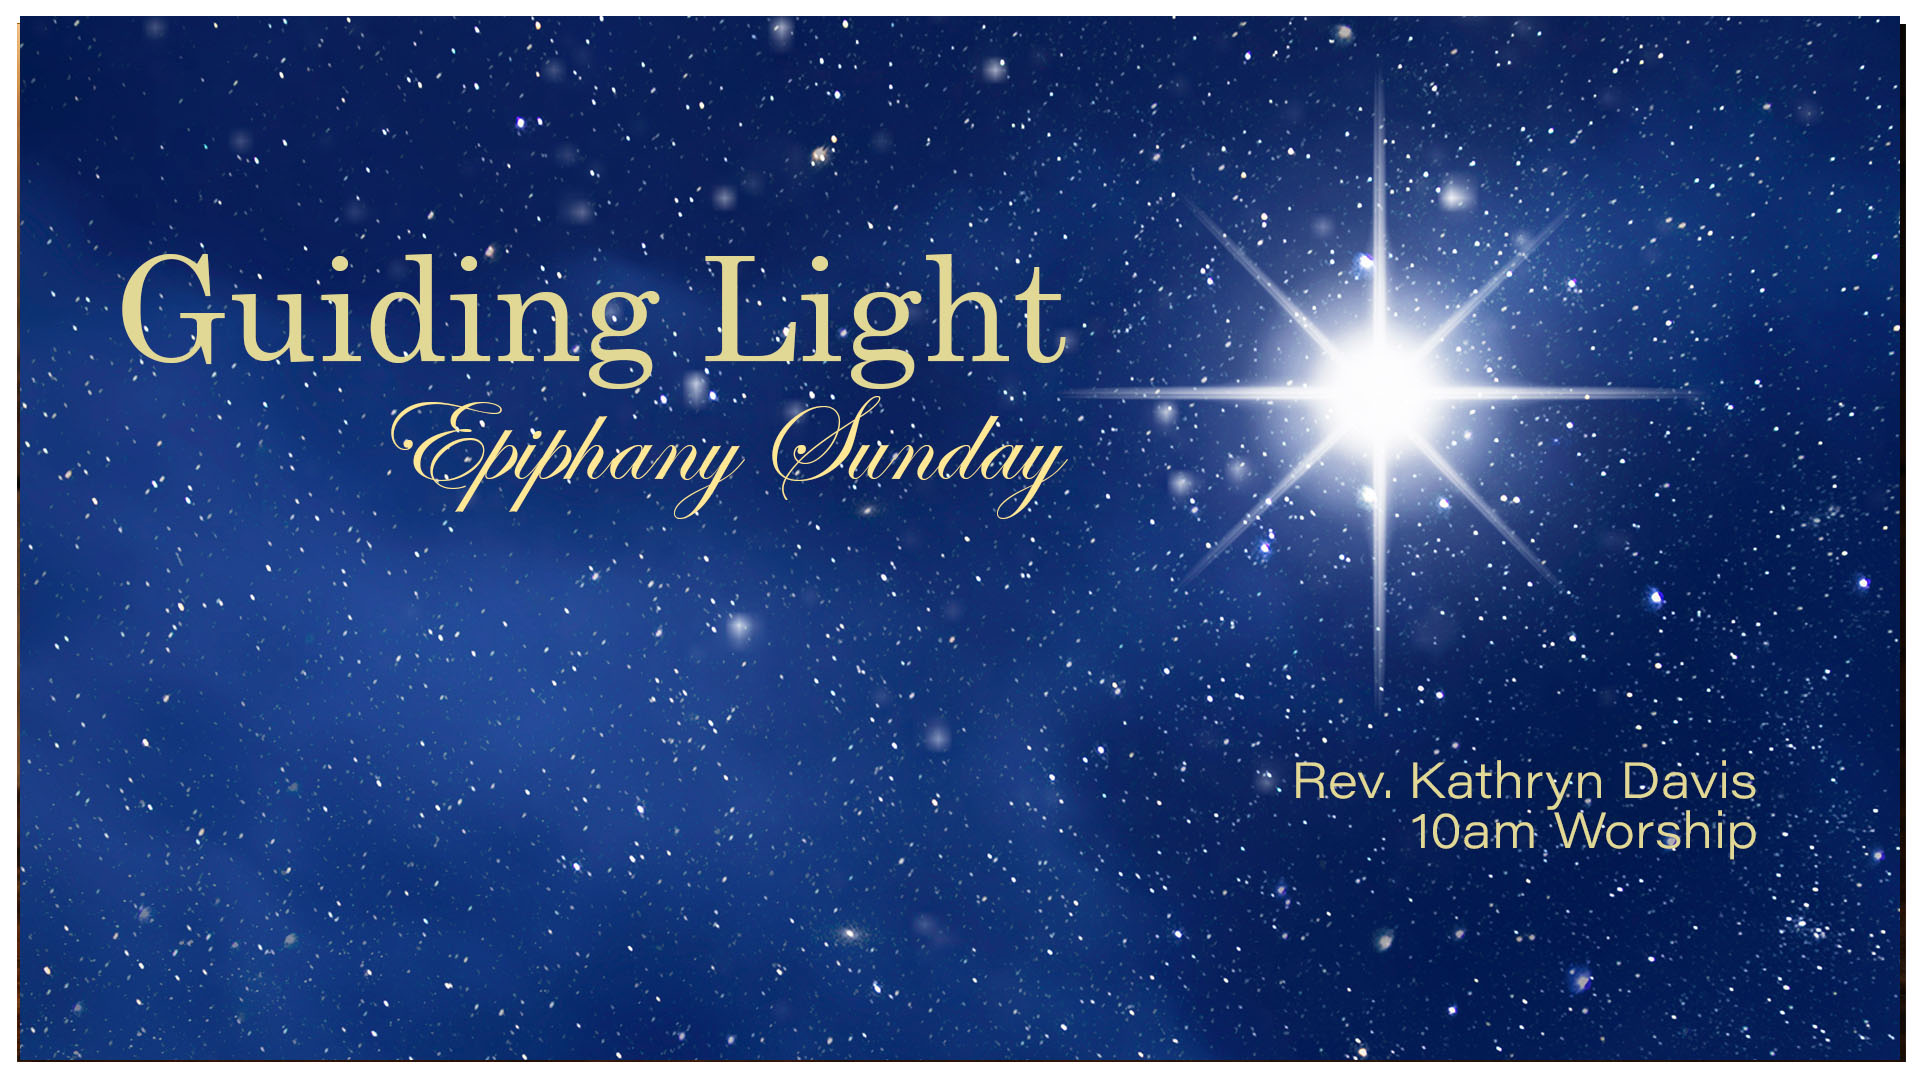 Guiding Light - Epiphany Sunday